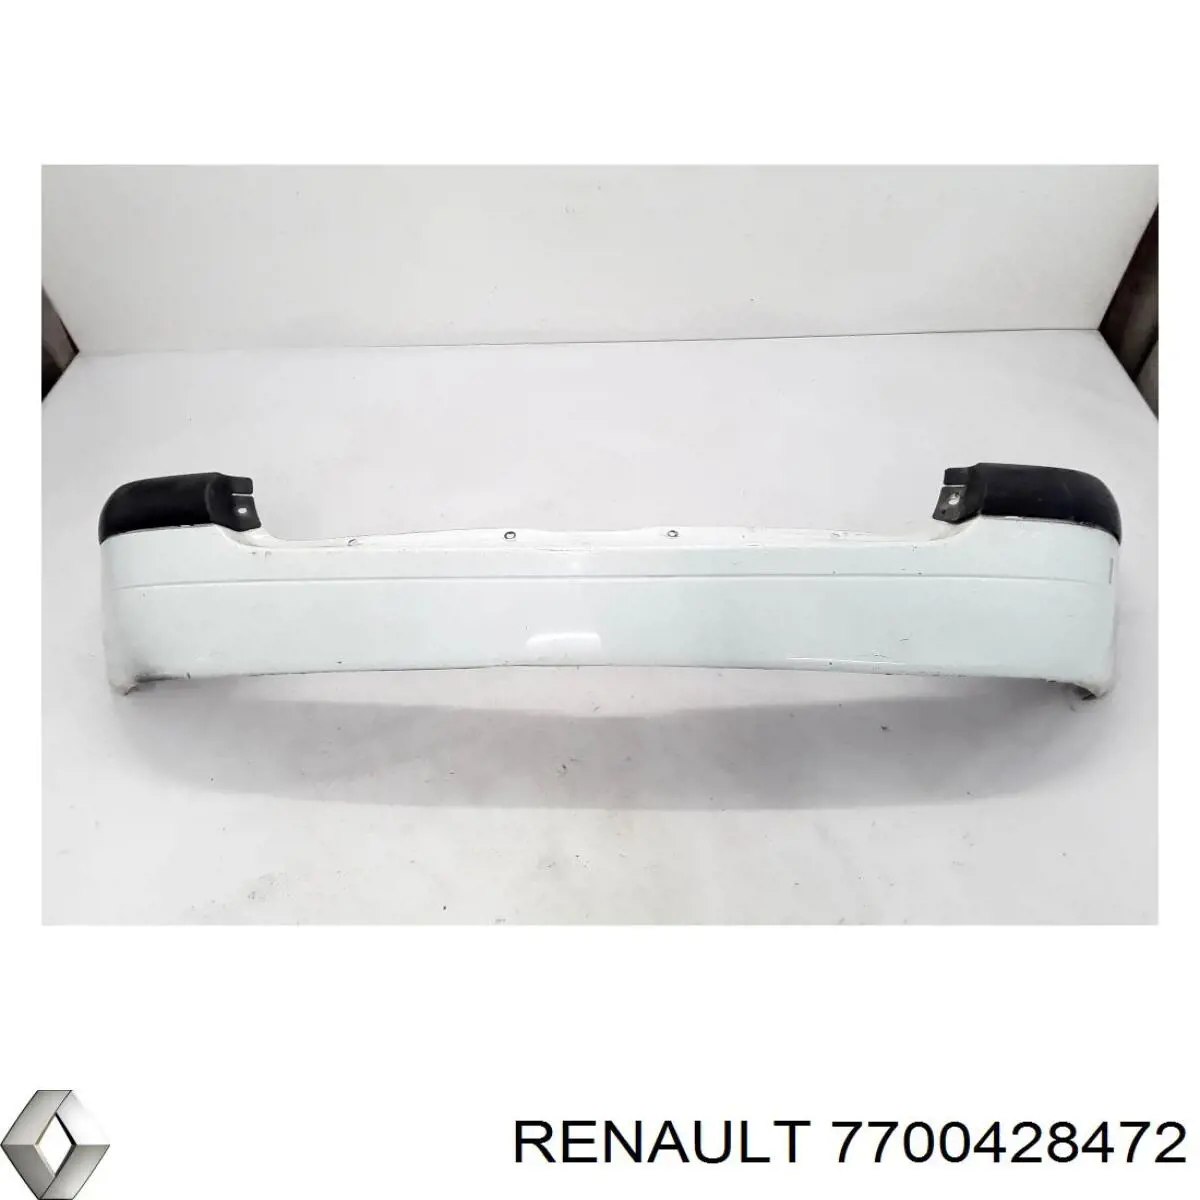 7700428472 Renault (RVI) parachoques trasero